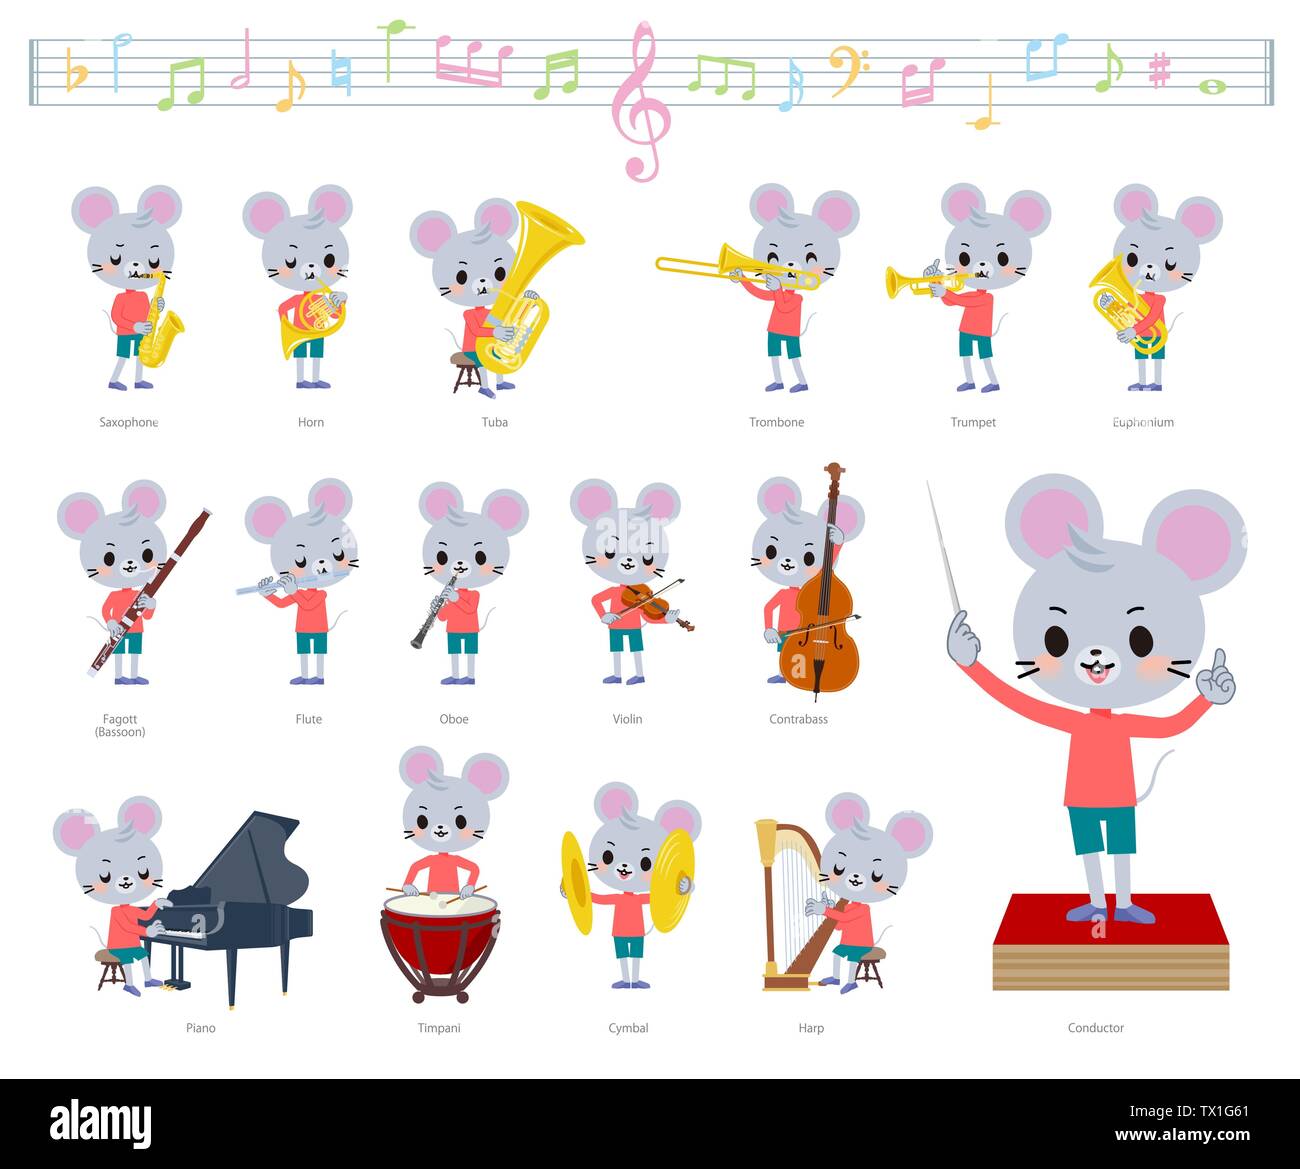 Un ensemble de souris garçon sur musique classique.Il y a des mesures à jouer de divers instruments, tels que les instruments à cordes et instruments à vent.C'est Illustration de Vecteur